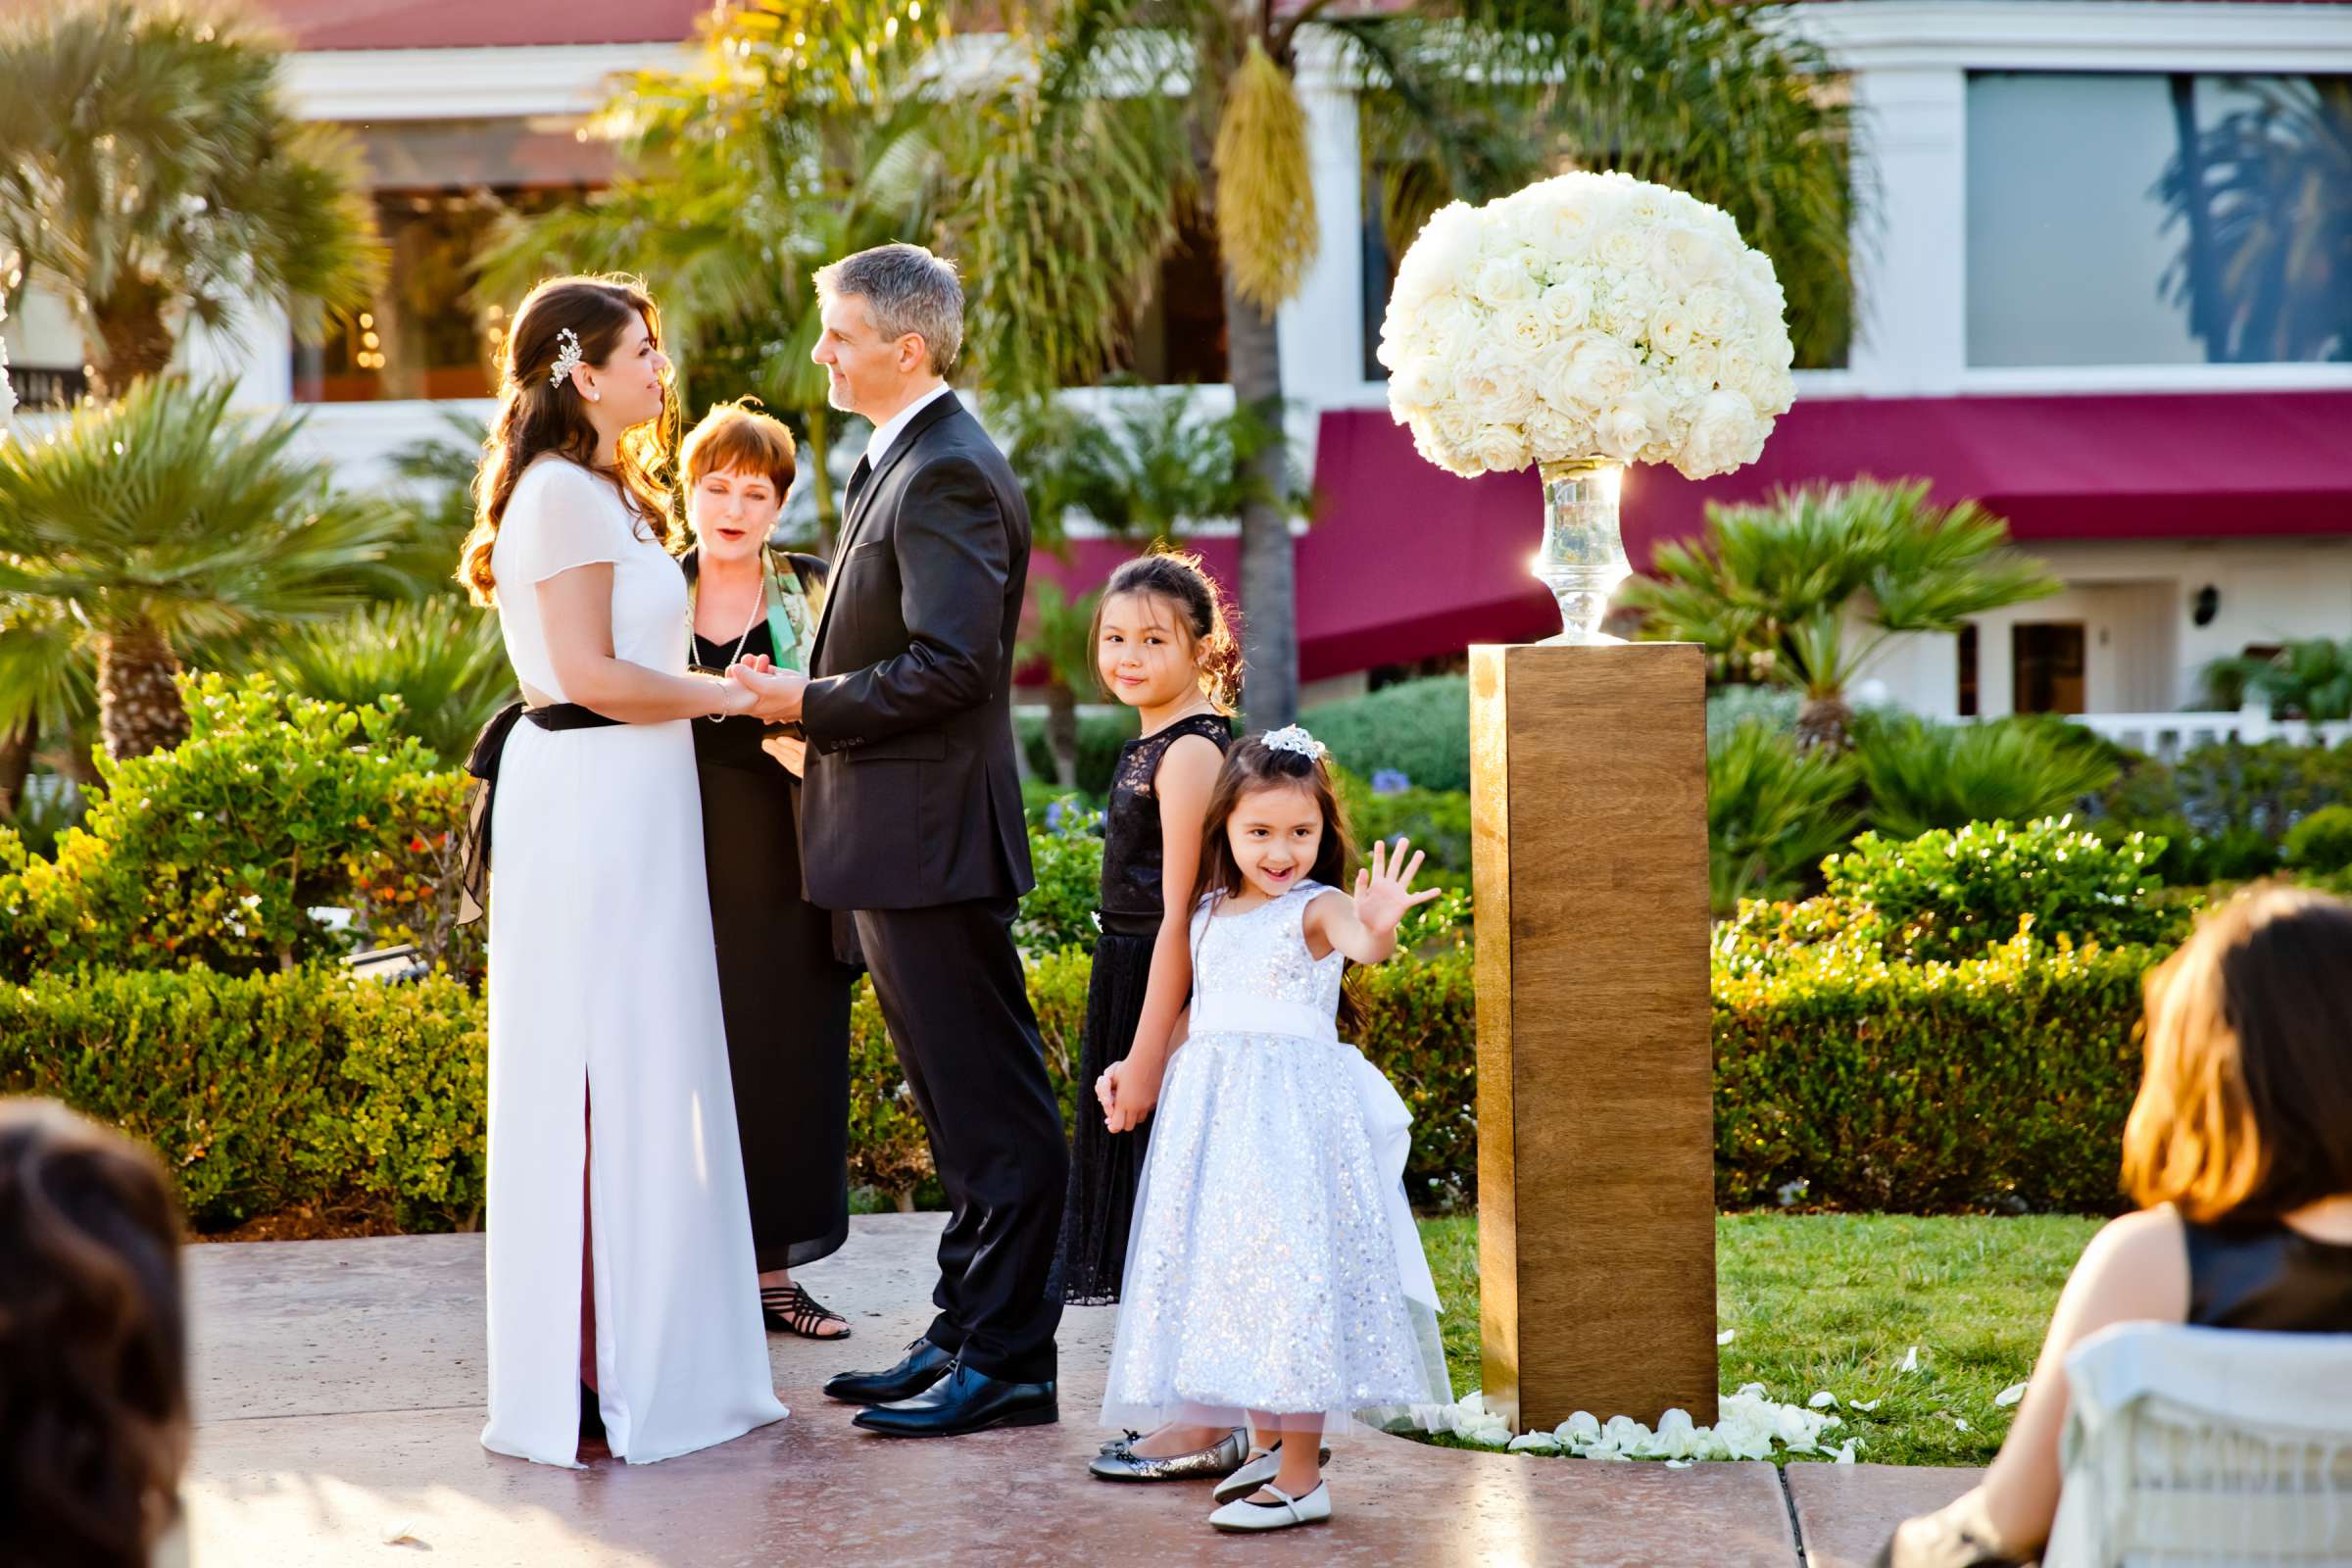 Hotel Del Coronado Wedding, Melis and Marc Wedding Photo #33 by True Photography